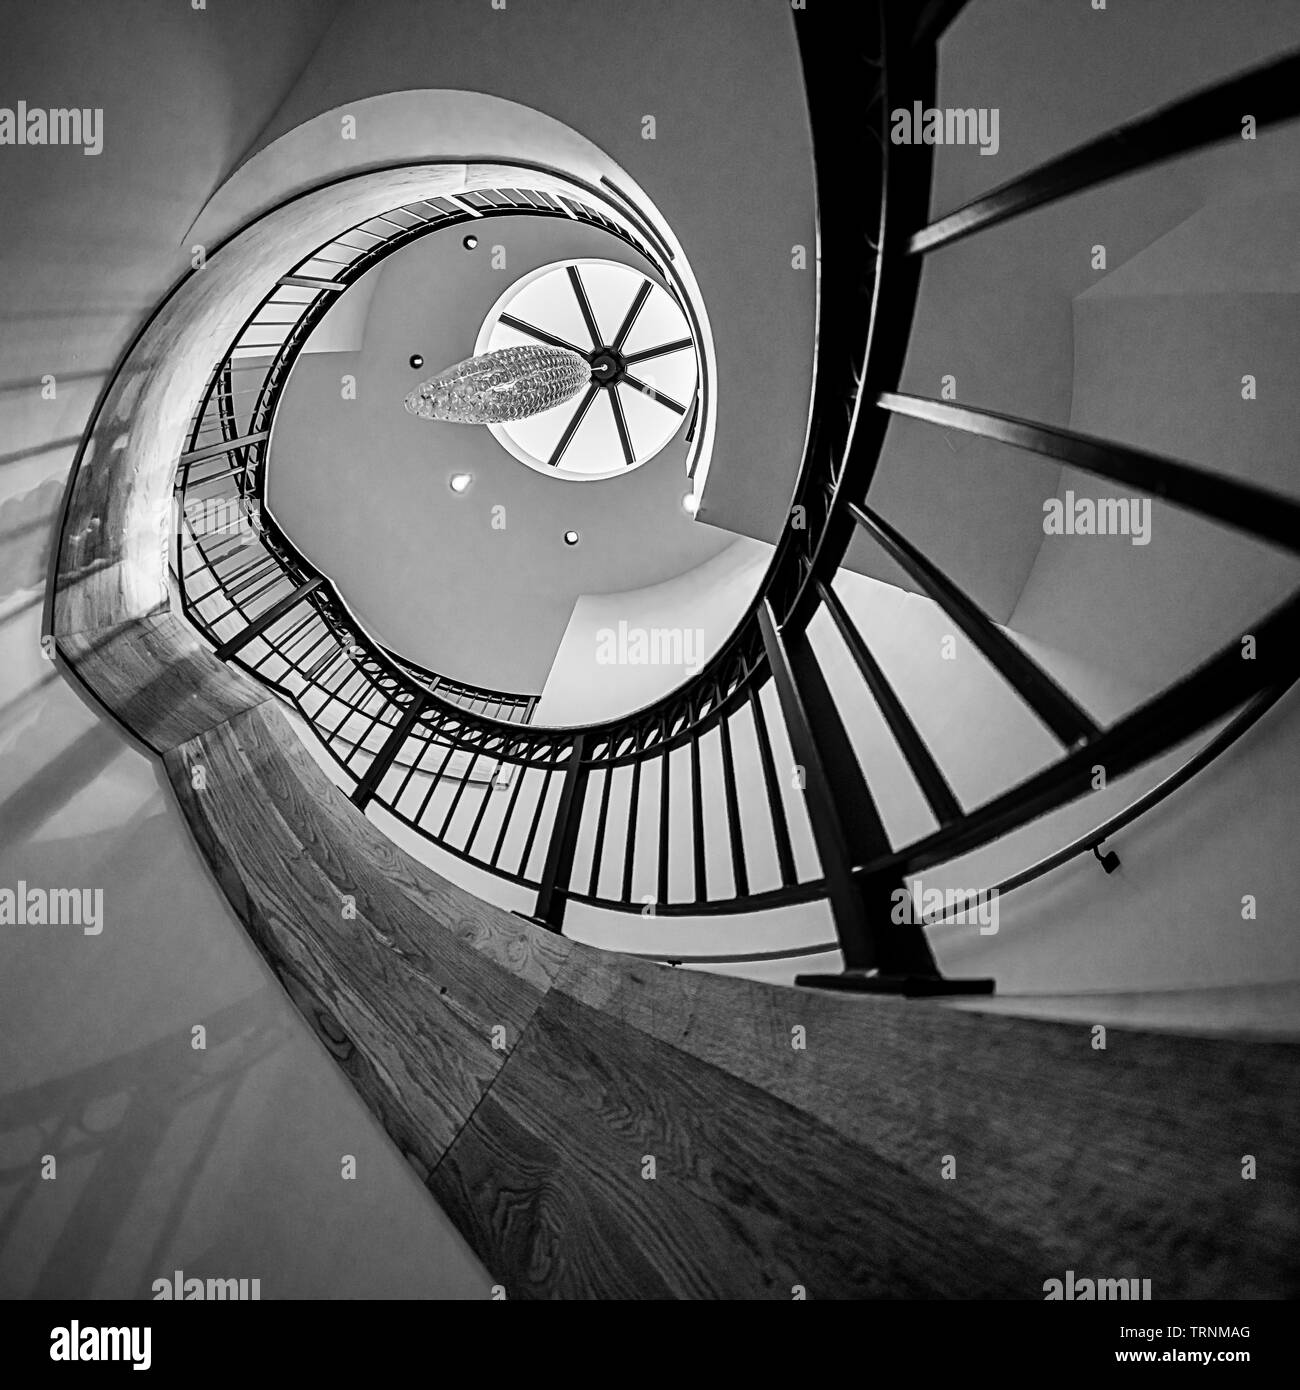 Un escalier s'enroule vers le haut dans une extrême helix Banque D'Images